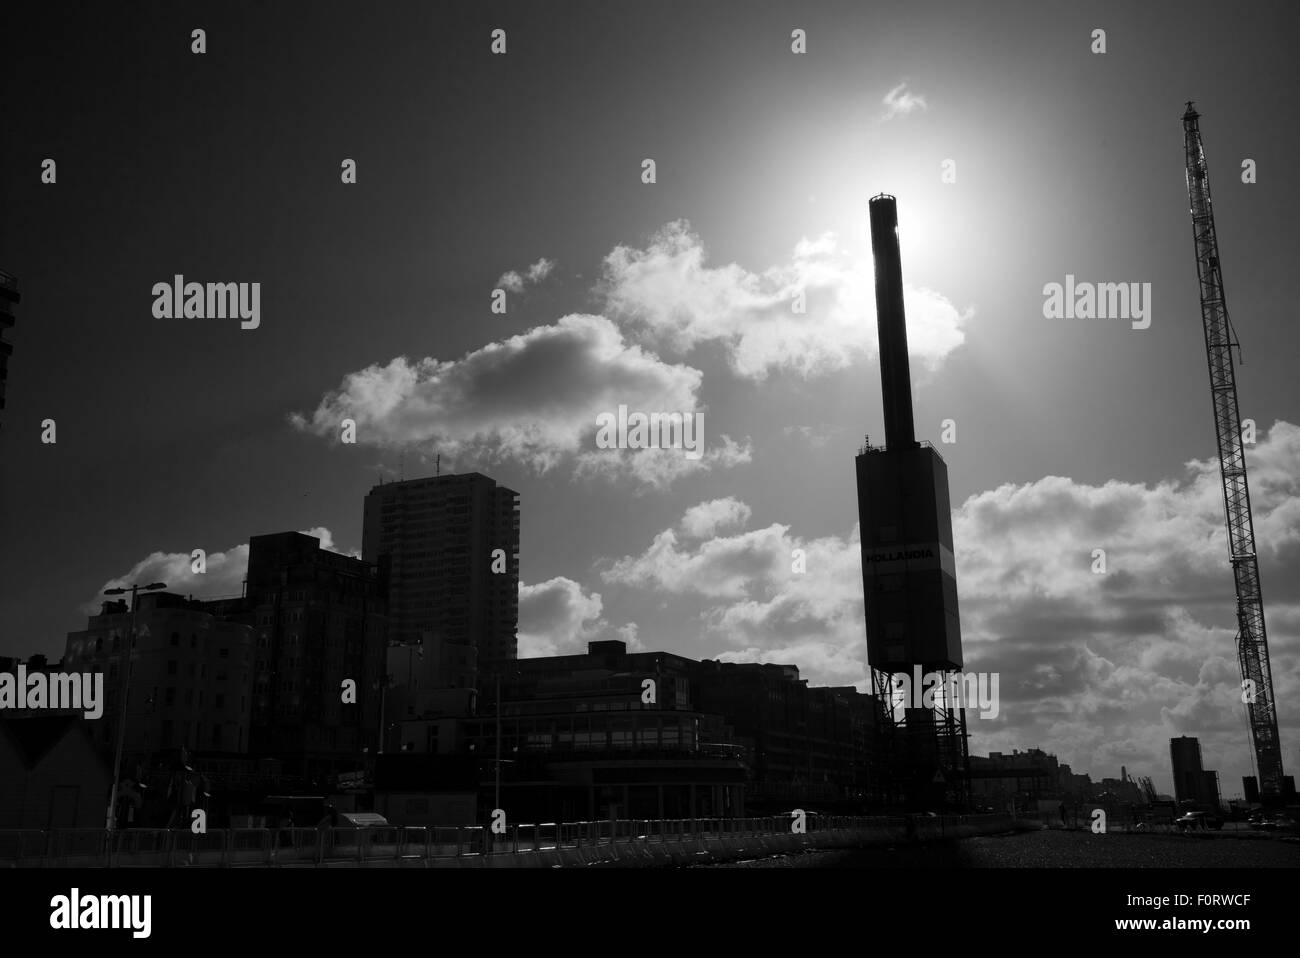 Soleil du matin derrière la tour d'observation i360 en cours de construction, Brighton, UK, noir et blanc Banque D'Images